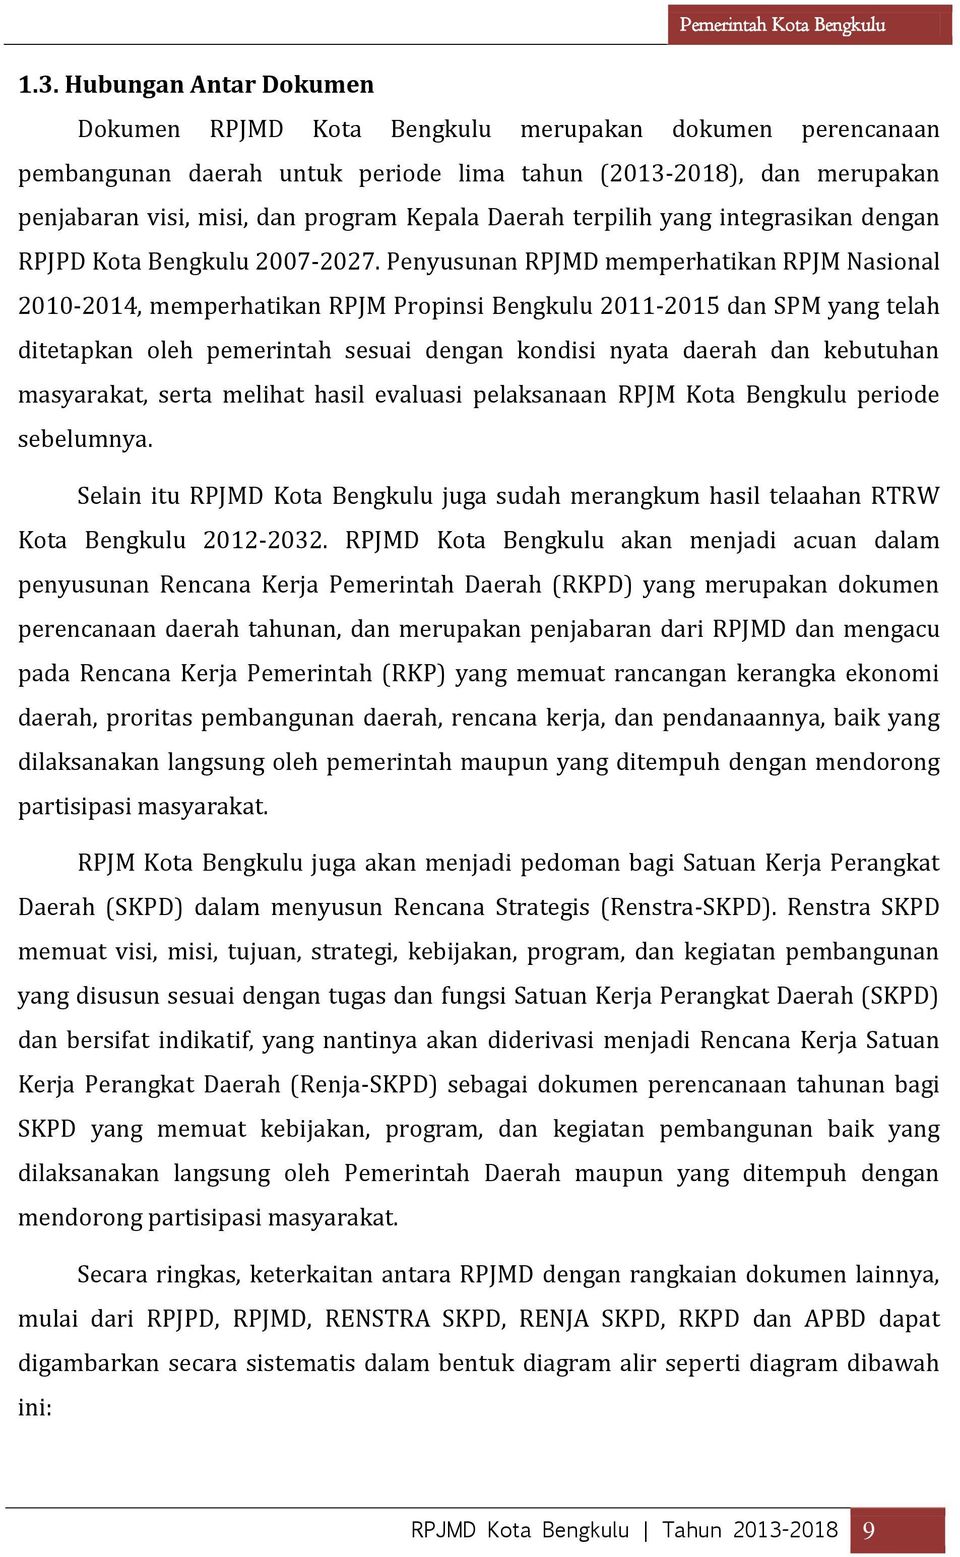 Penyusunan RPJMD memperhatikan RPJM Nasional 2010-2014, memperhatikan RPJM Propinsi Bengkulu 2011-2015 dan SPM yang telah ditetapkan oleh pemerintah sesuai dengan kondisi nyata daerah dan kebutuhan